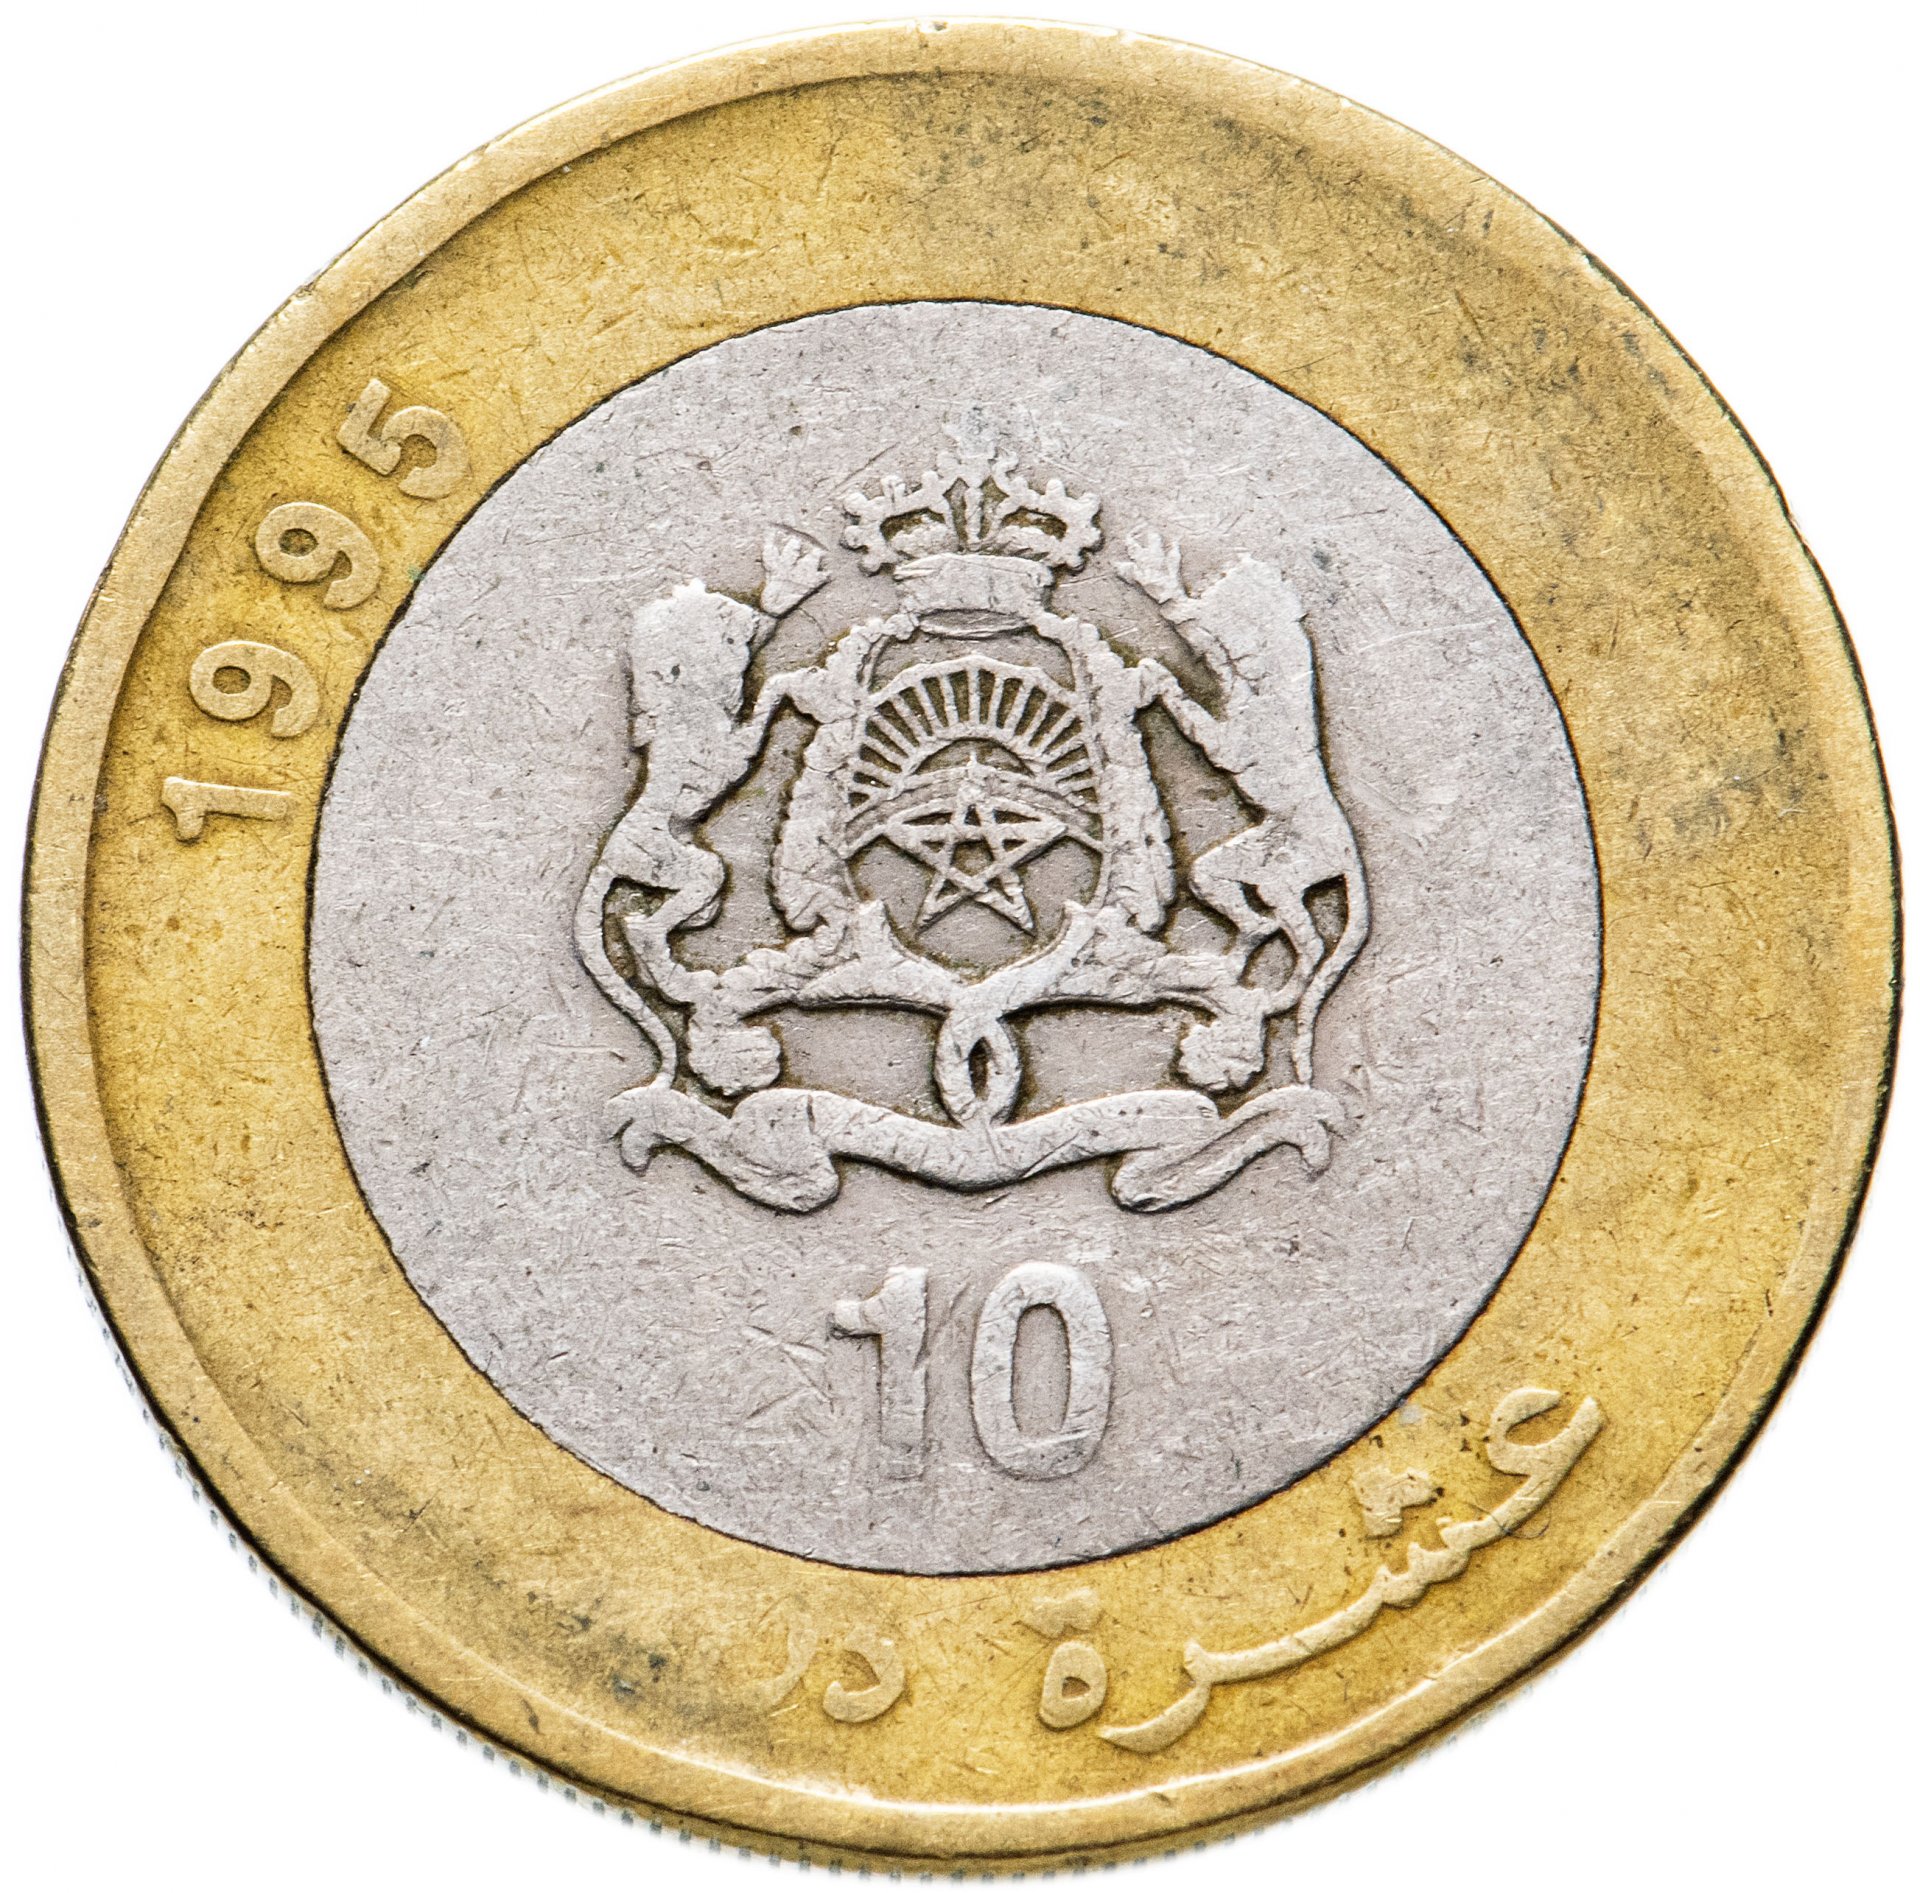 30000 дирхам. Монеты Марокко 10 дирхамов. Монета Марокко 10 дирхамов 1995 года. 10 Дирхам монета Марокко. Марокко монета 1000.